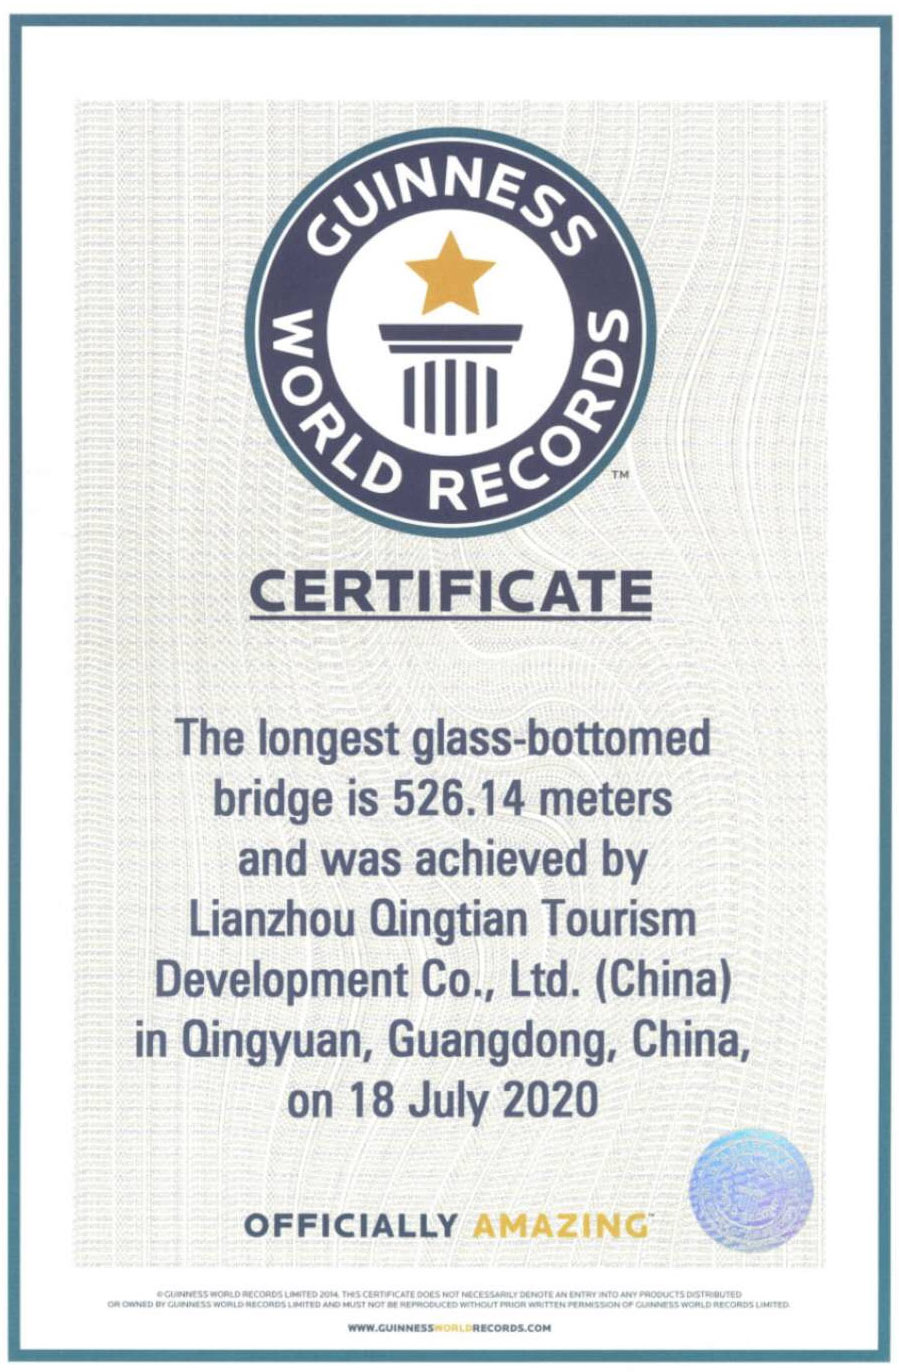 湟川三峡擎天玻璃桥，广东清远/吉尼斯纪录认证：“世界最长玻璃铺装悬索桥”-43